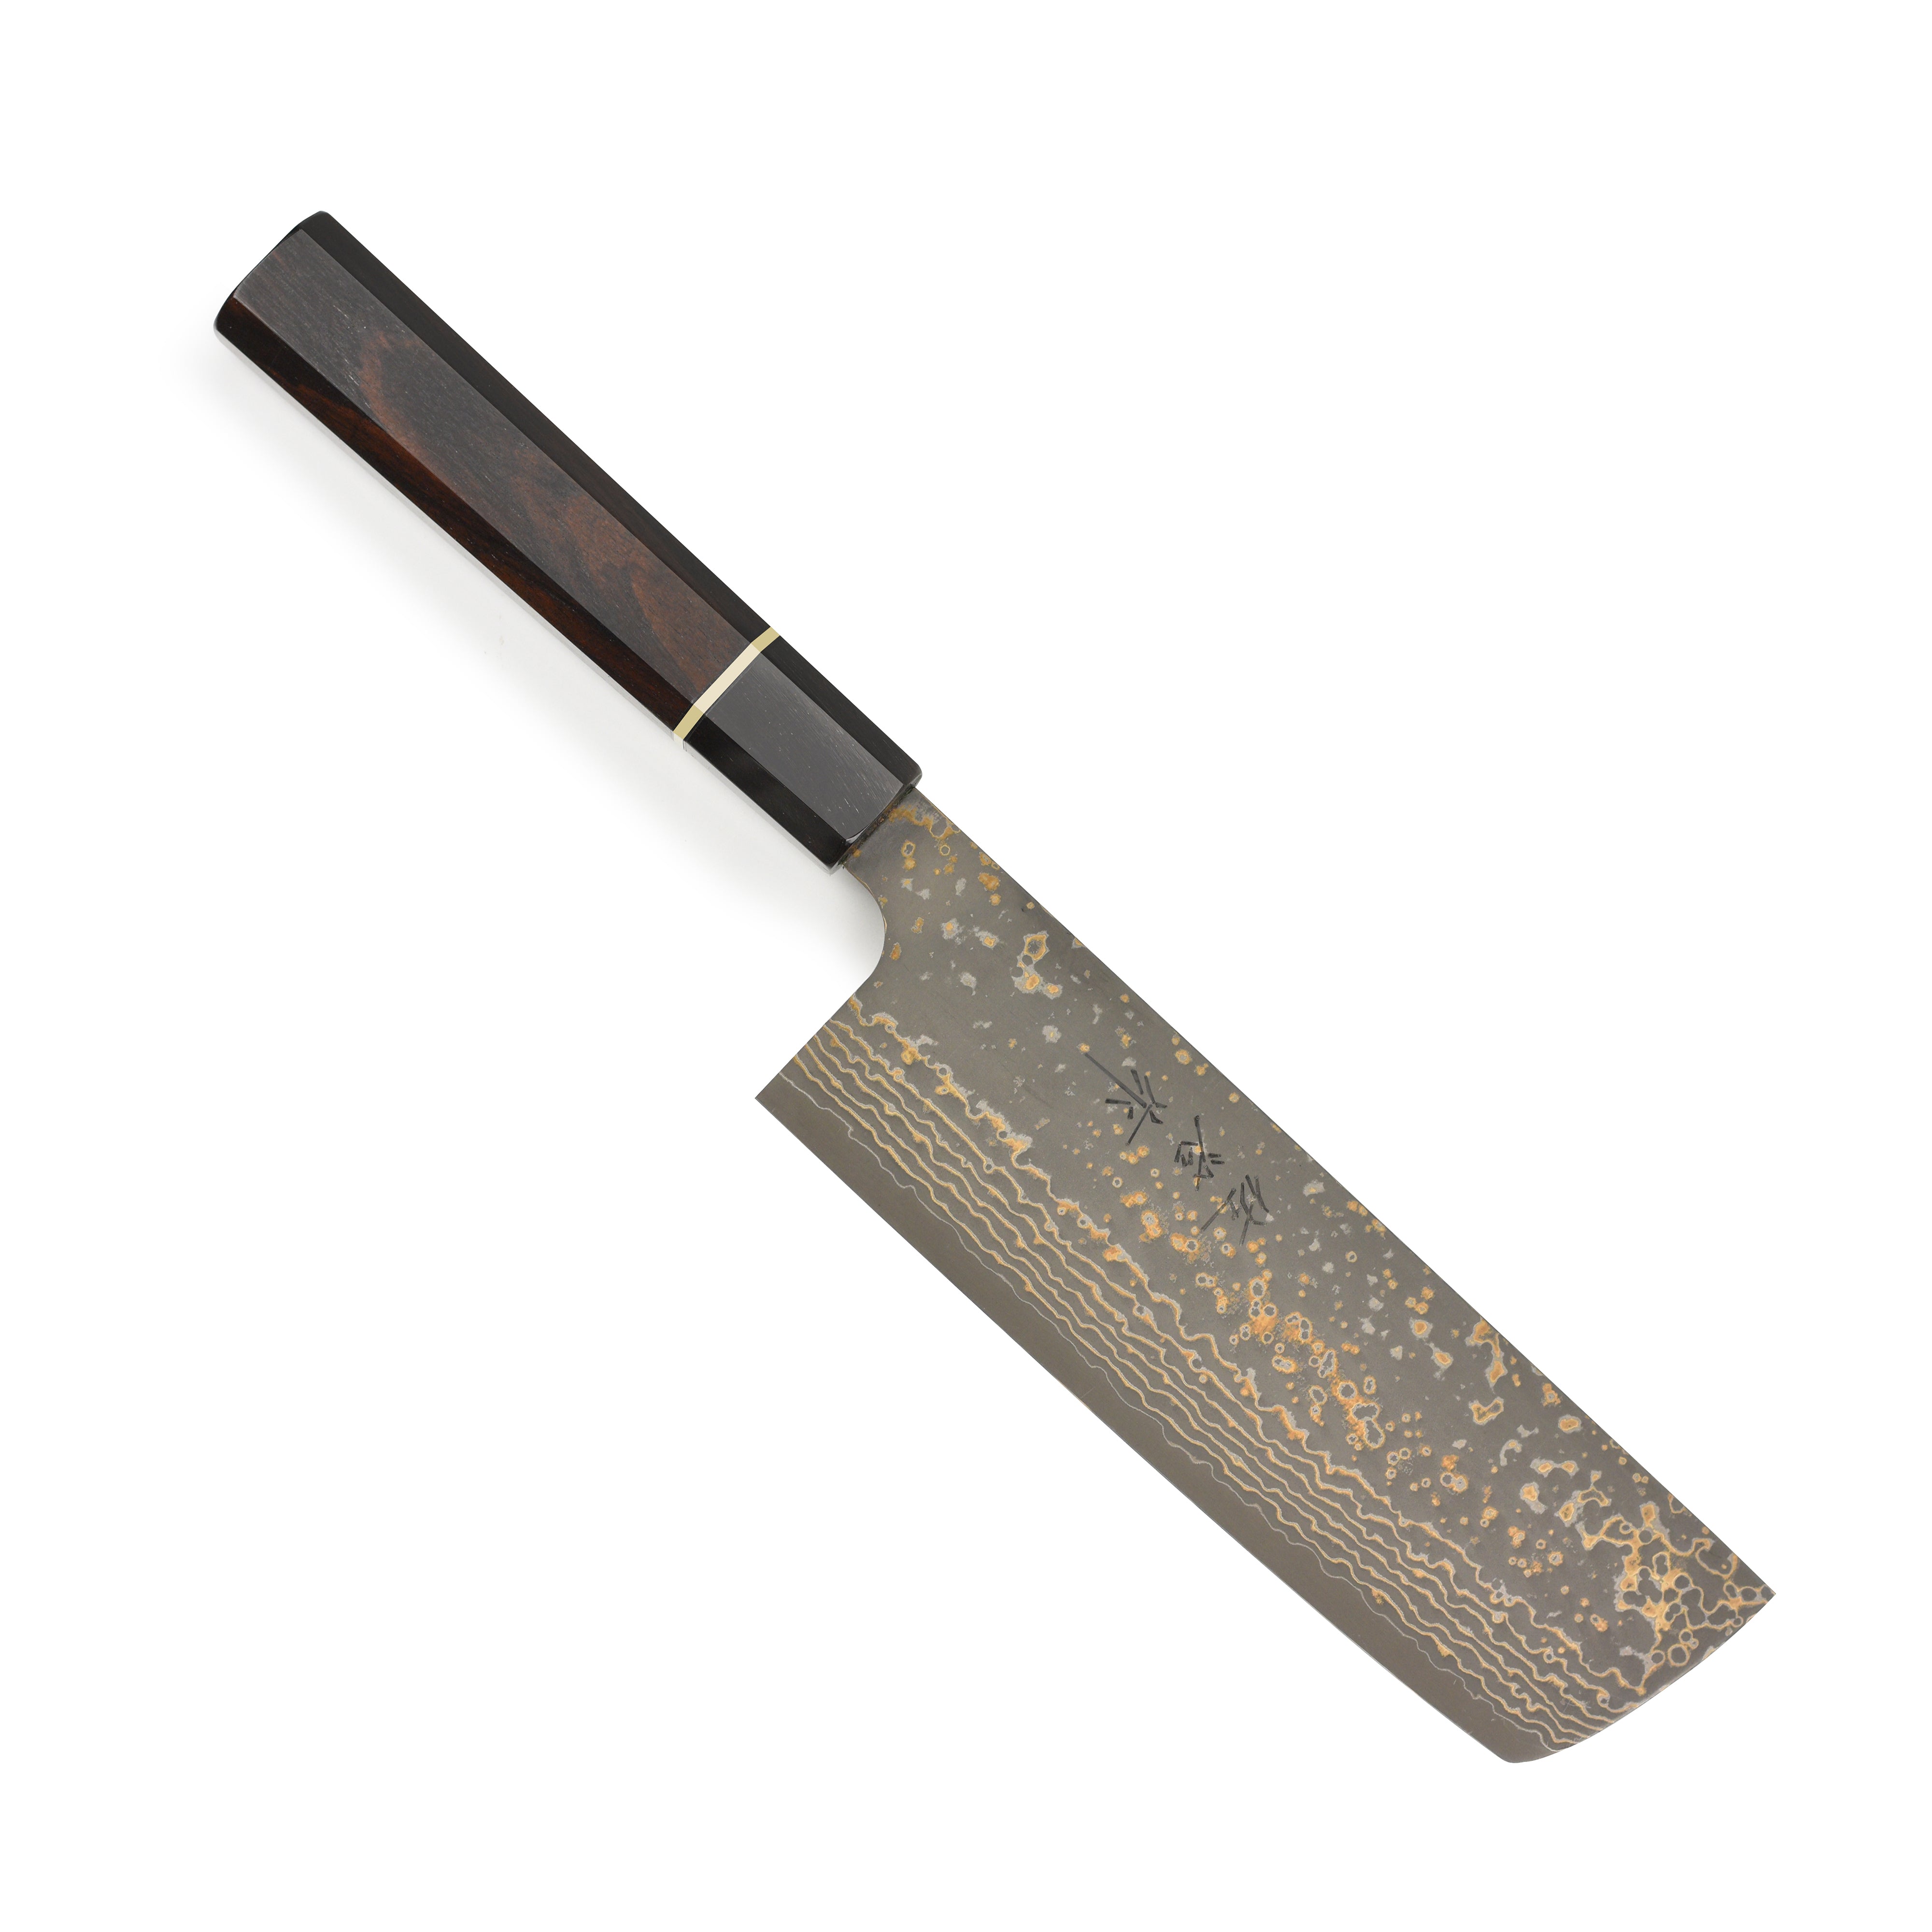 Japanese Nakiri knife [Japanese style], Nakiri Knife, Japanese Knives